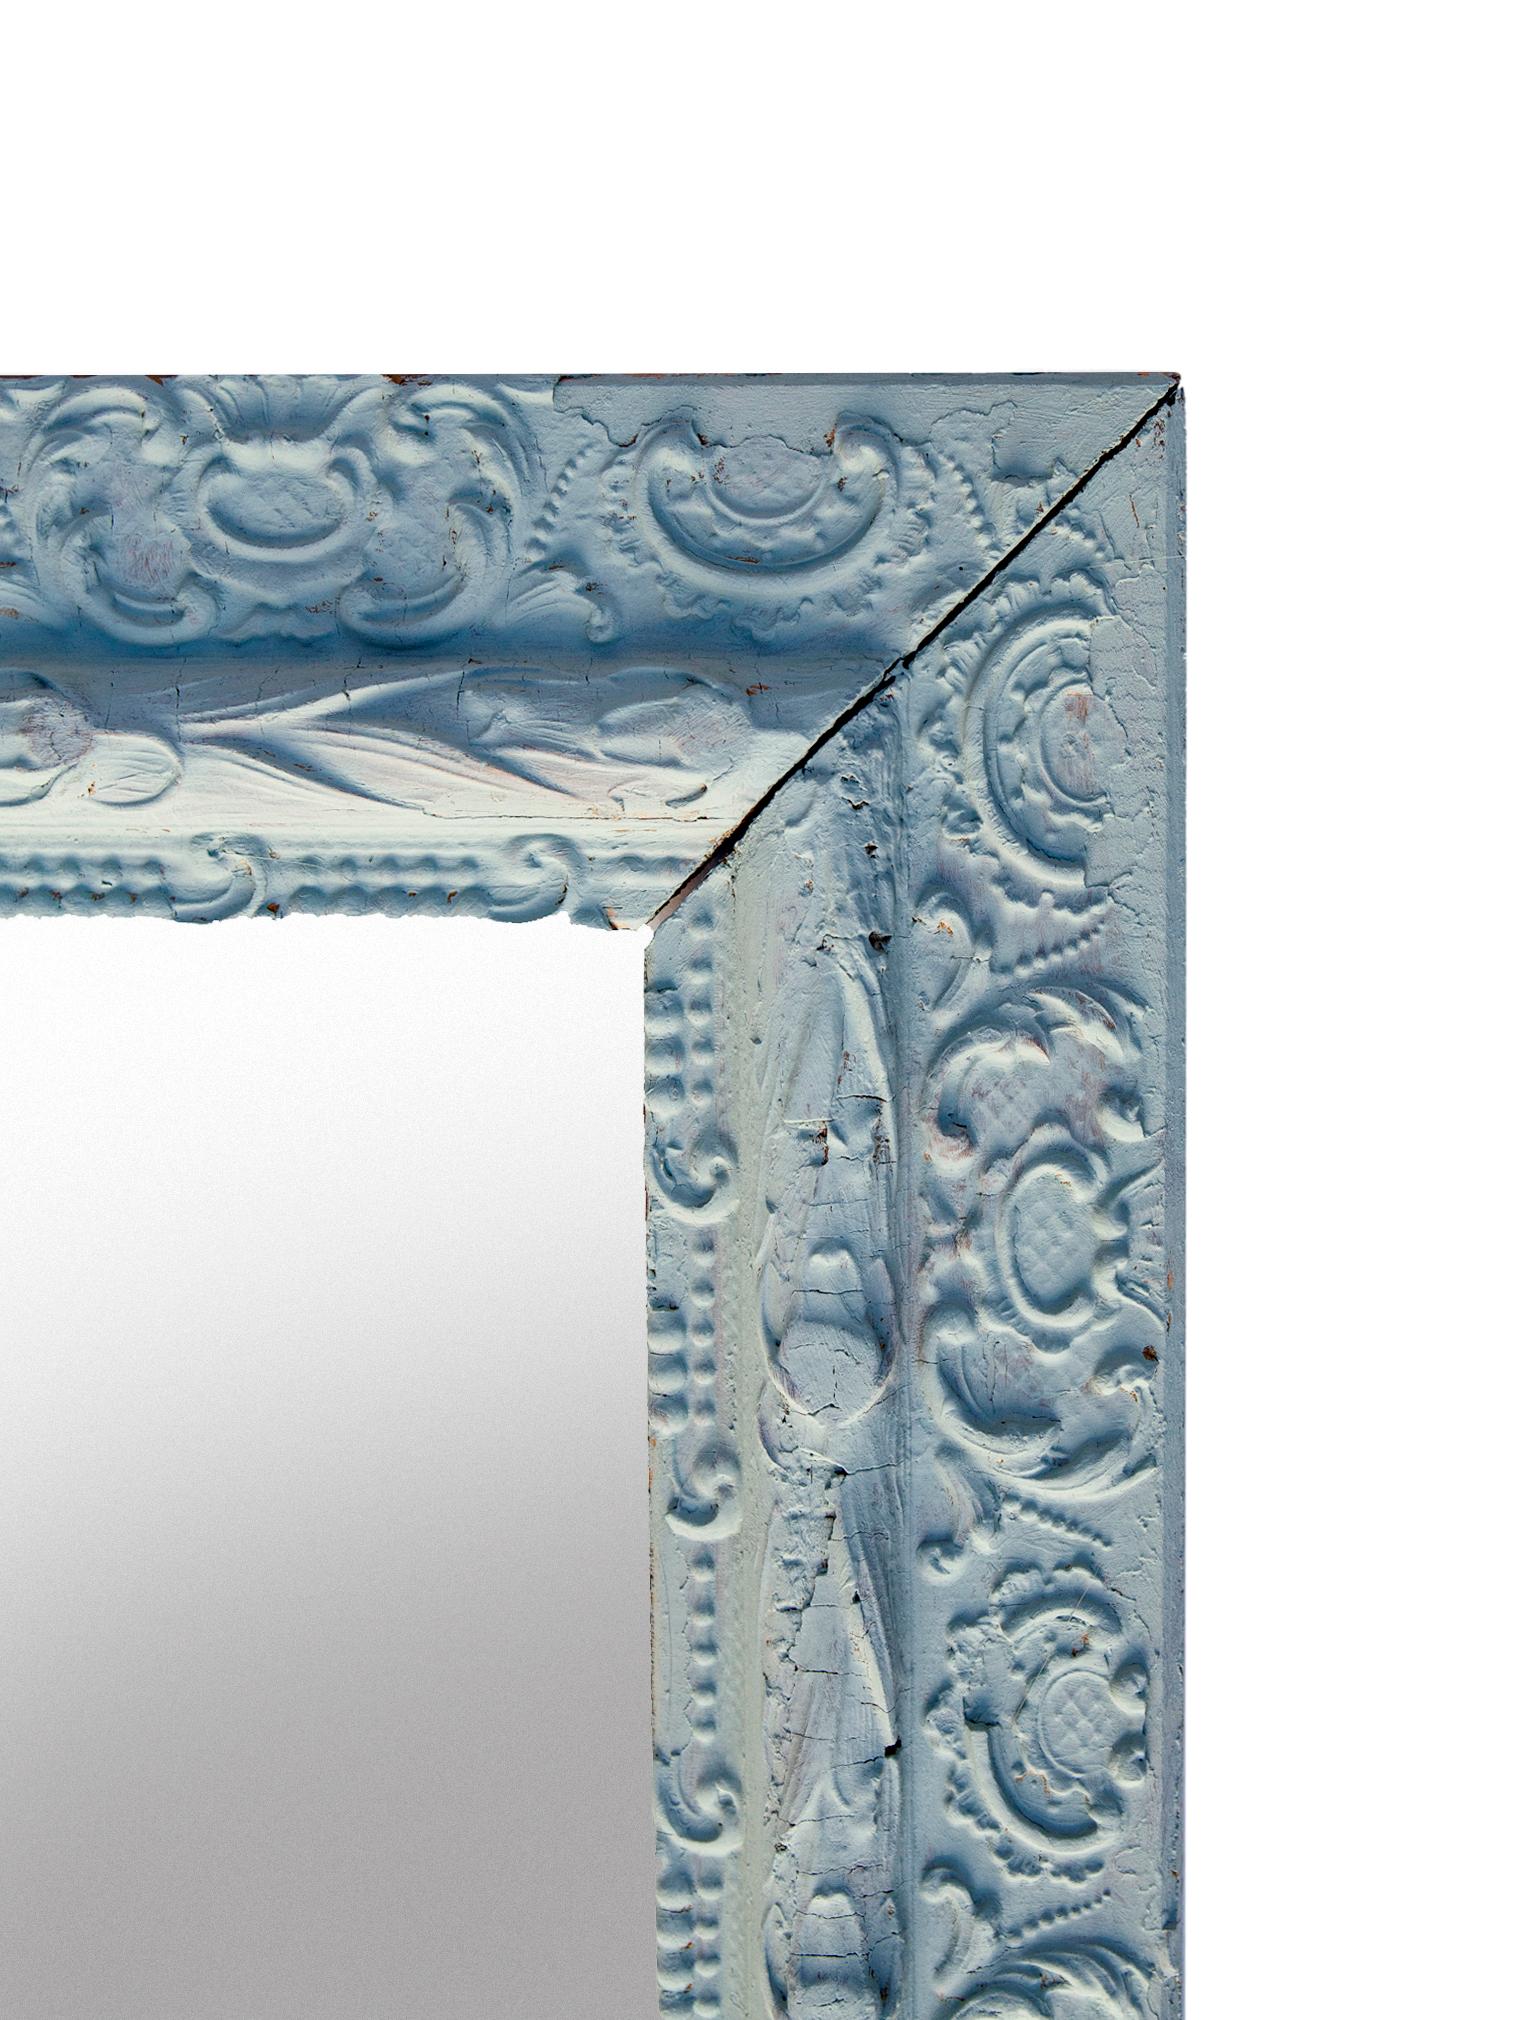 Miroir bleu victorien de mauvaise qualité, avec un peu de gesso écaillé, qui est à peine perceptible sous la peinture.
Léger, avec un profil plat, il est facile à suspendre à peu près n'importe où.
Miroir &New neufs.